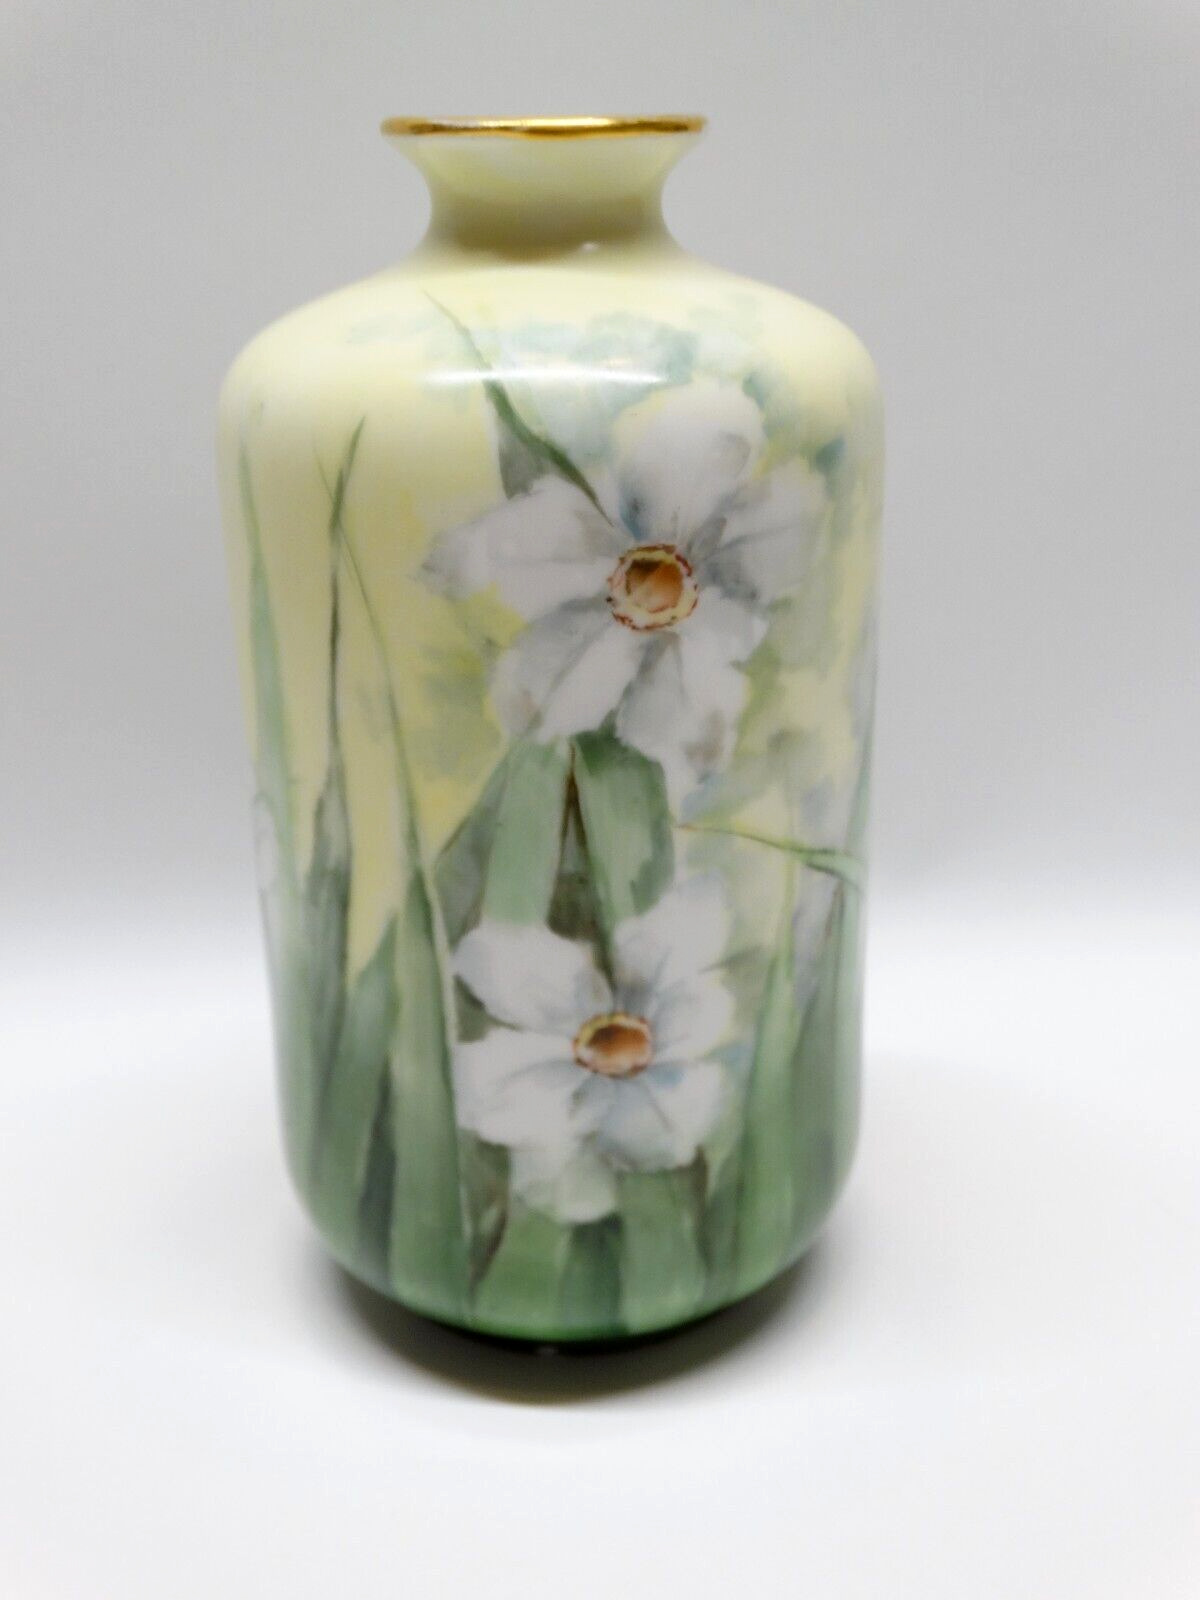 Antique Porcelain Vase Daffodil Design with Gold Trim Bavaria Signed by Artist